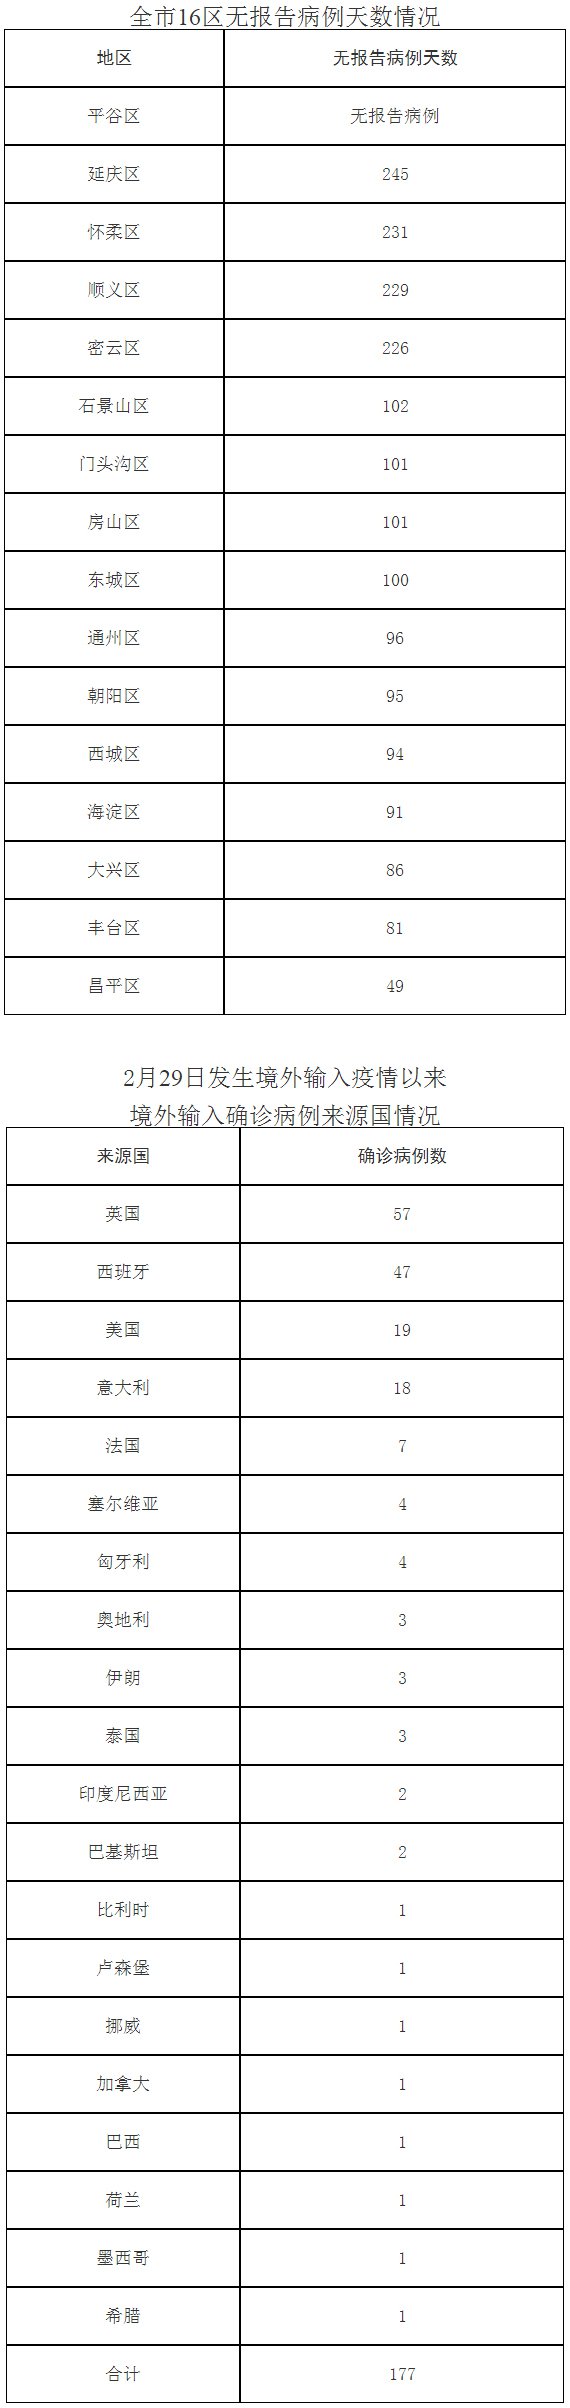 北京9月24日新增报告1例境外输入无症状感染者转确诊的病例